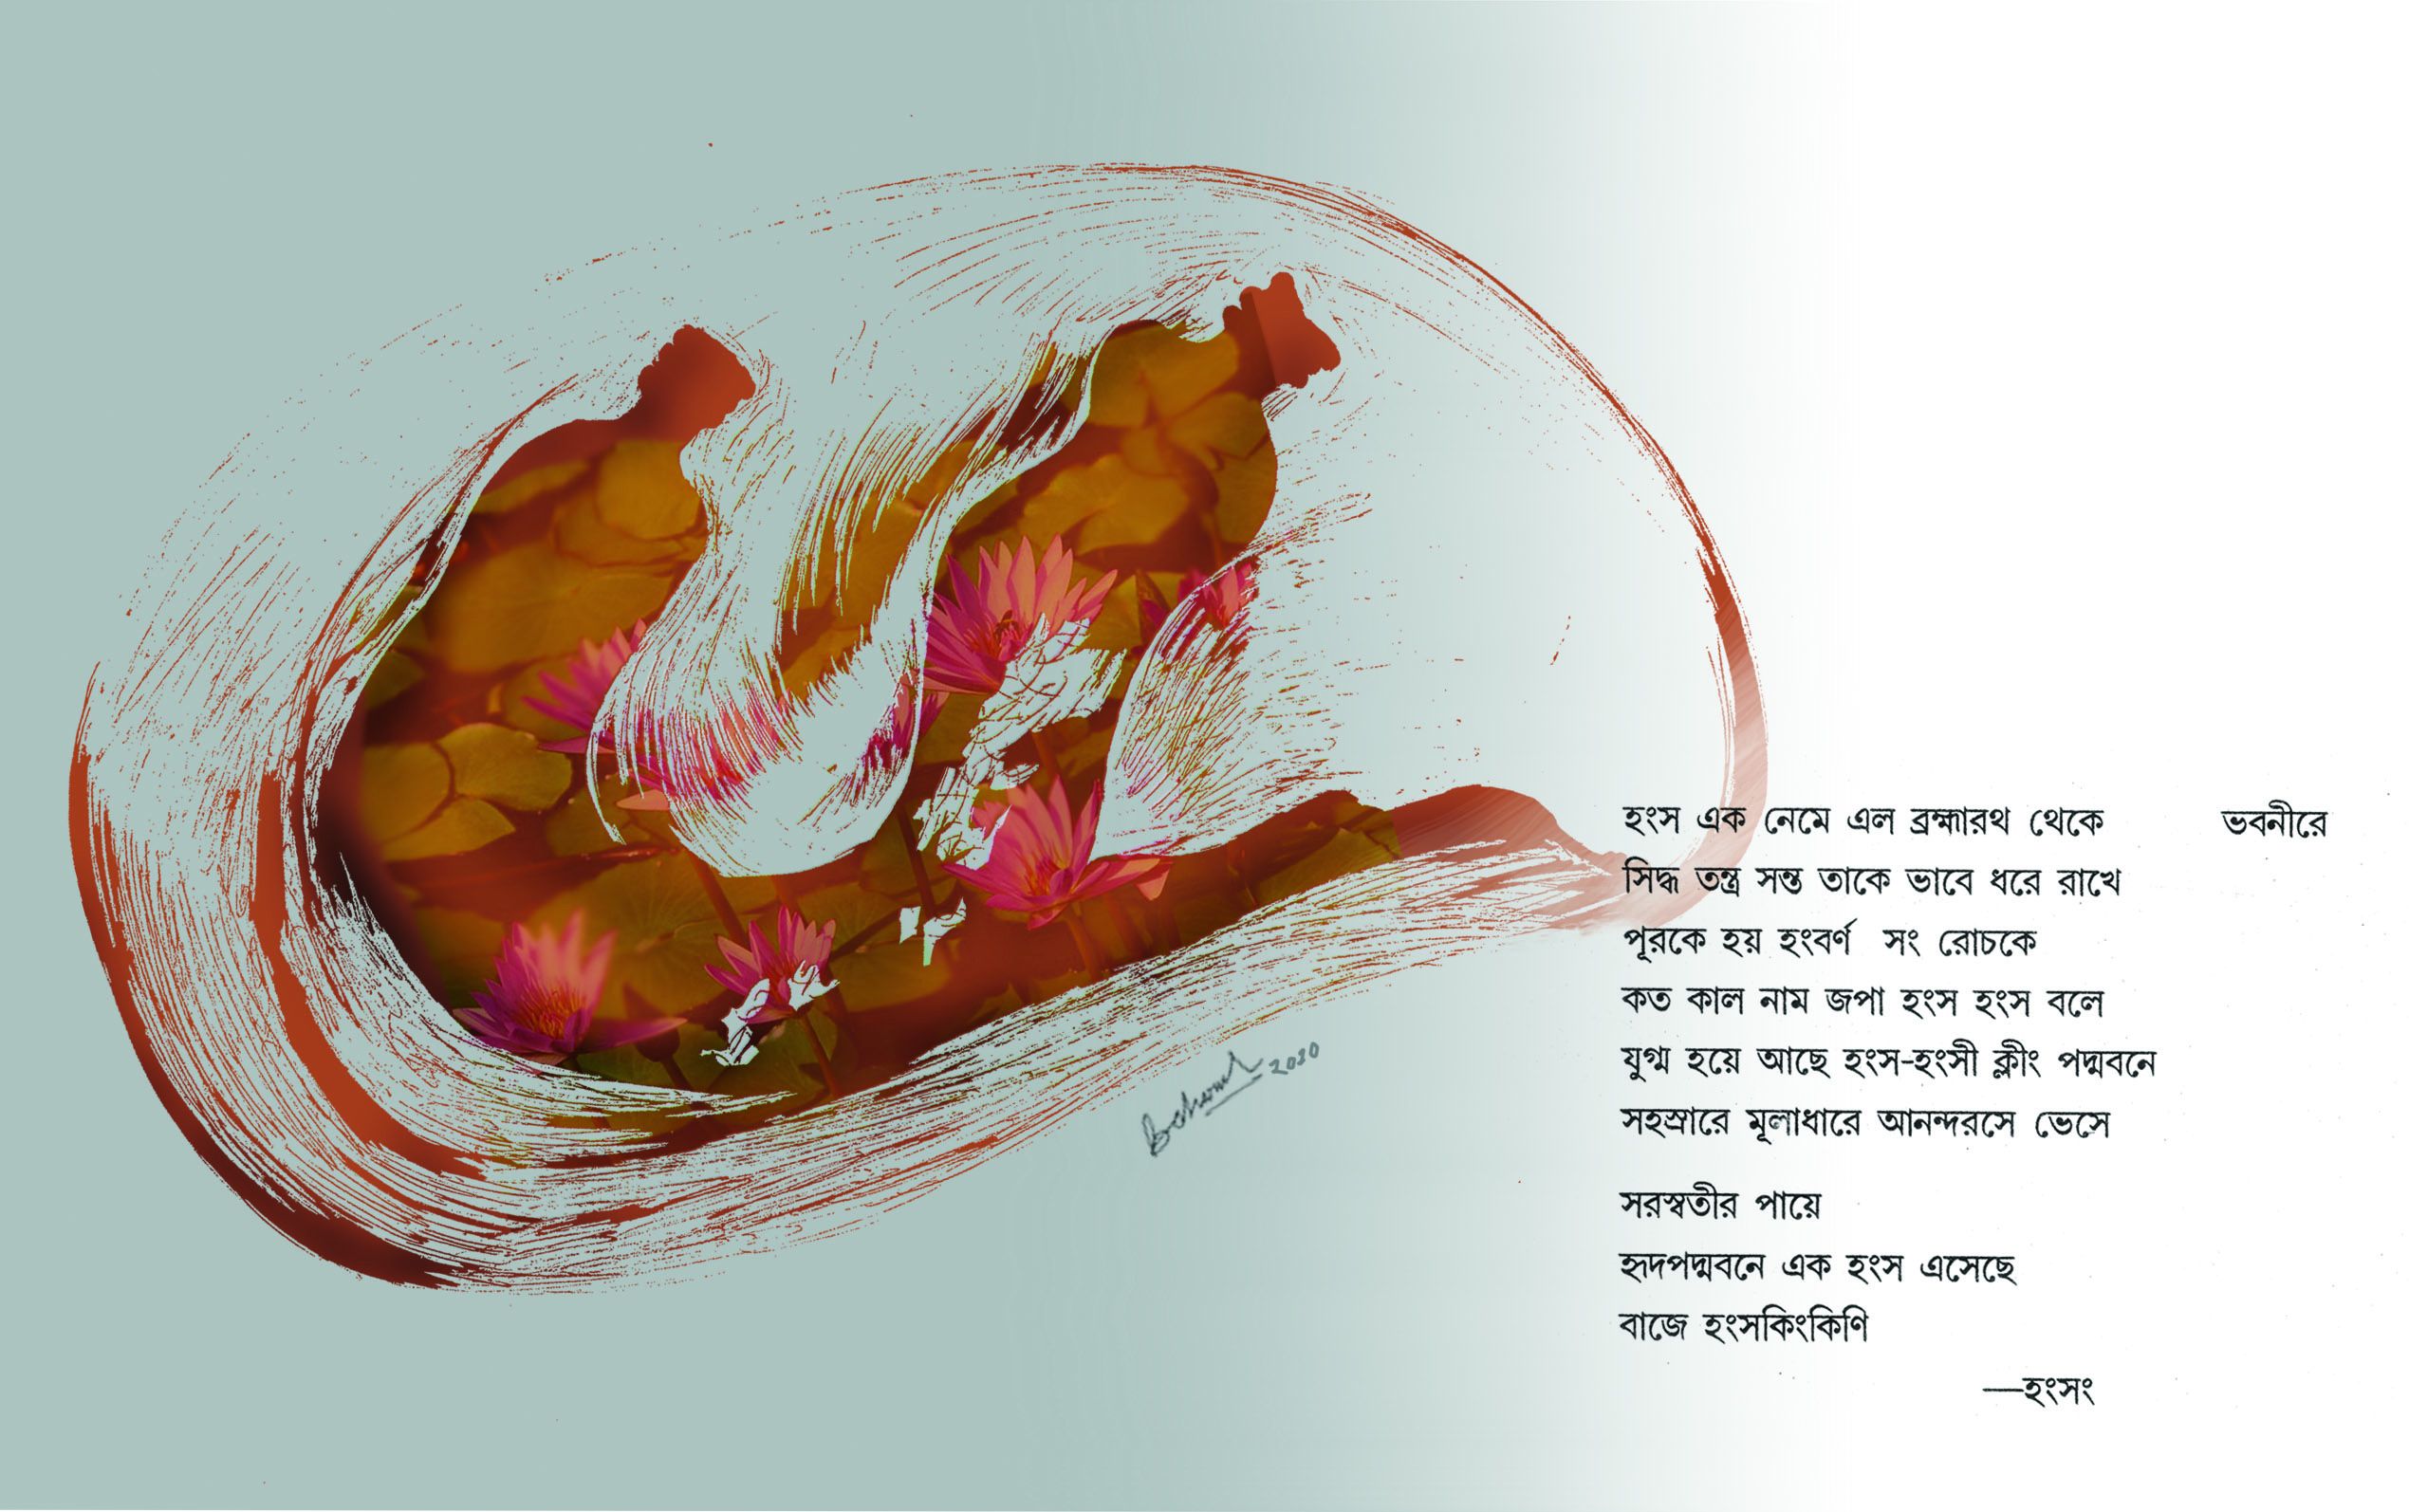 Sahaja Kamal. Poem by Anjan Sen and Illustration by Baharul Islam Laskar